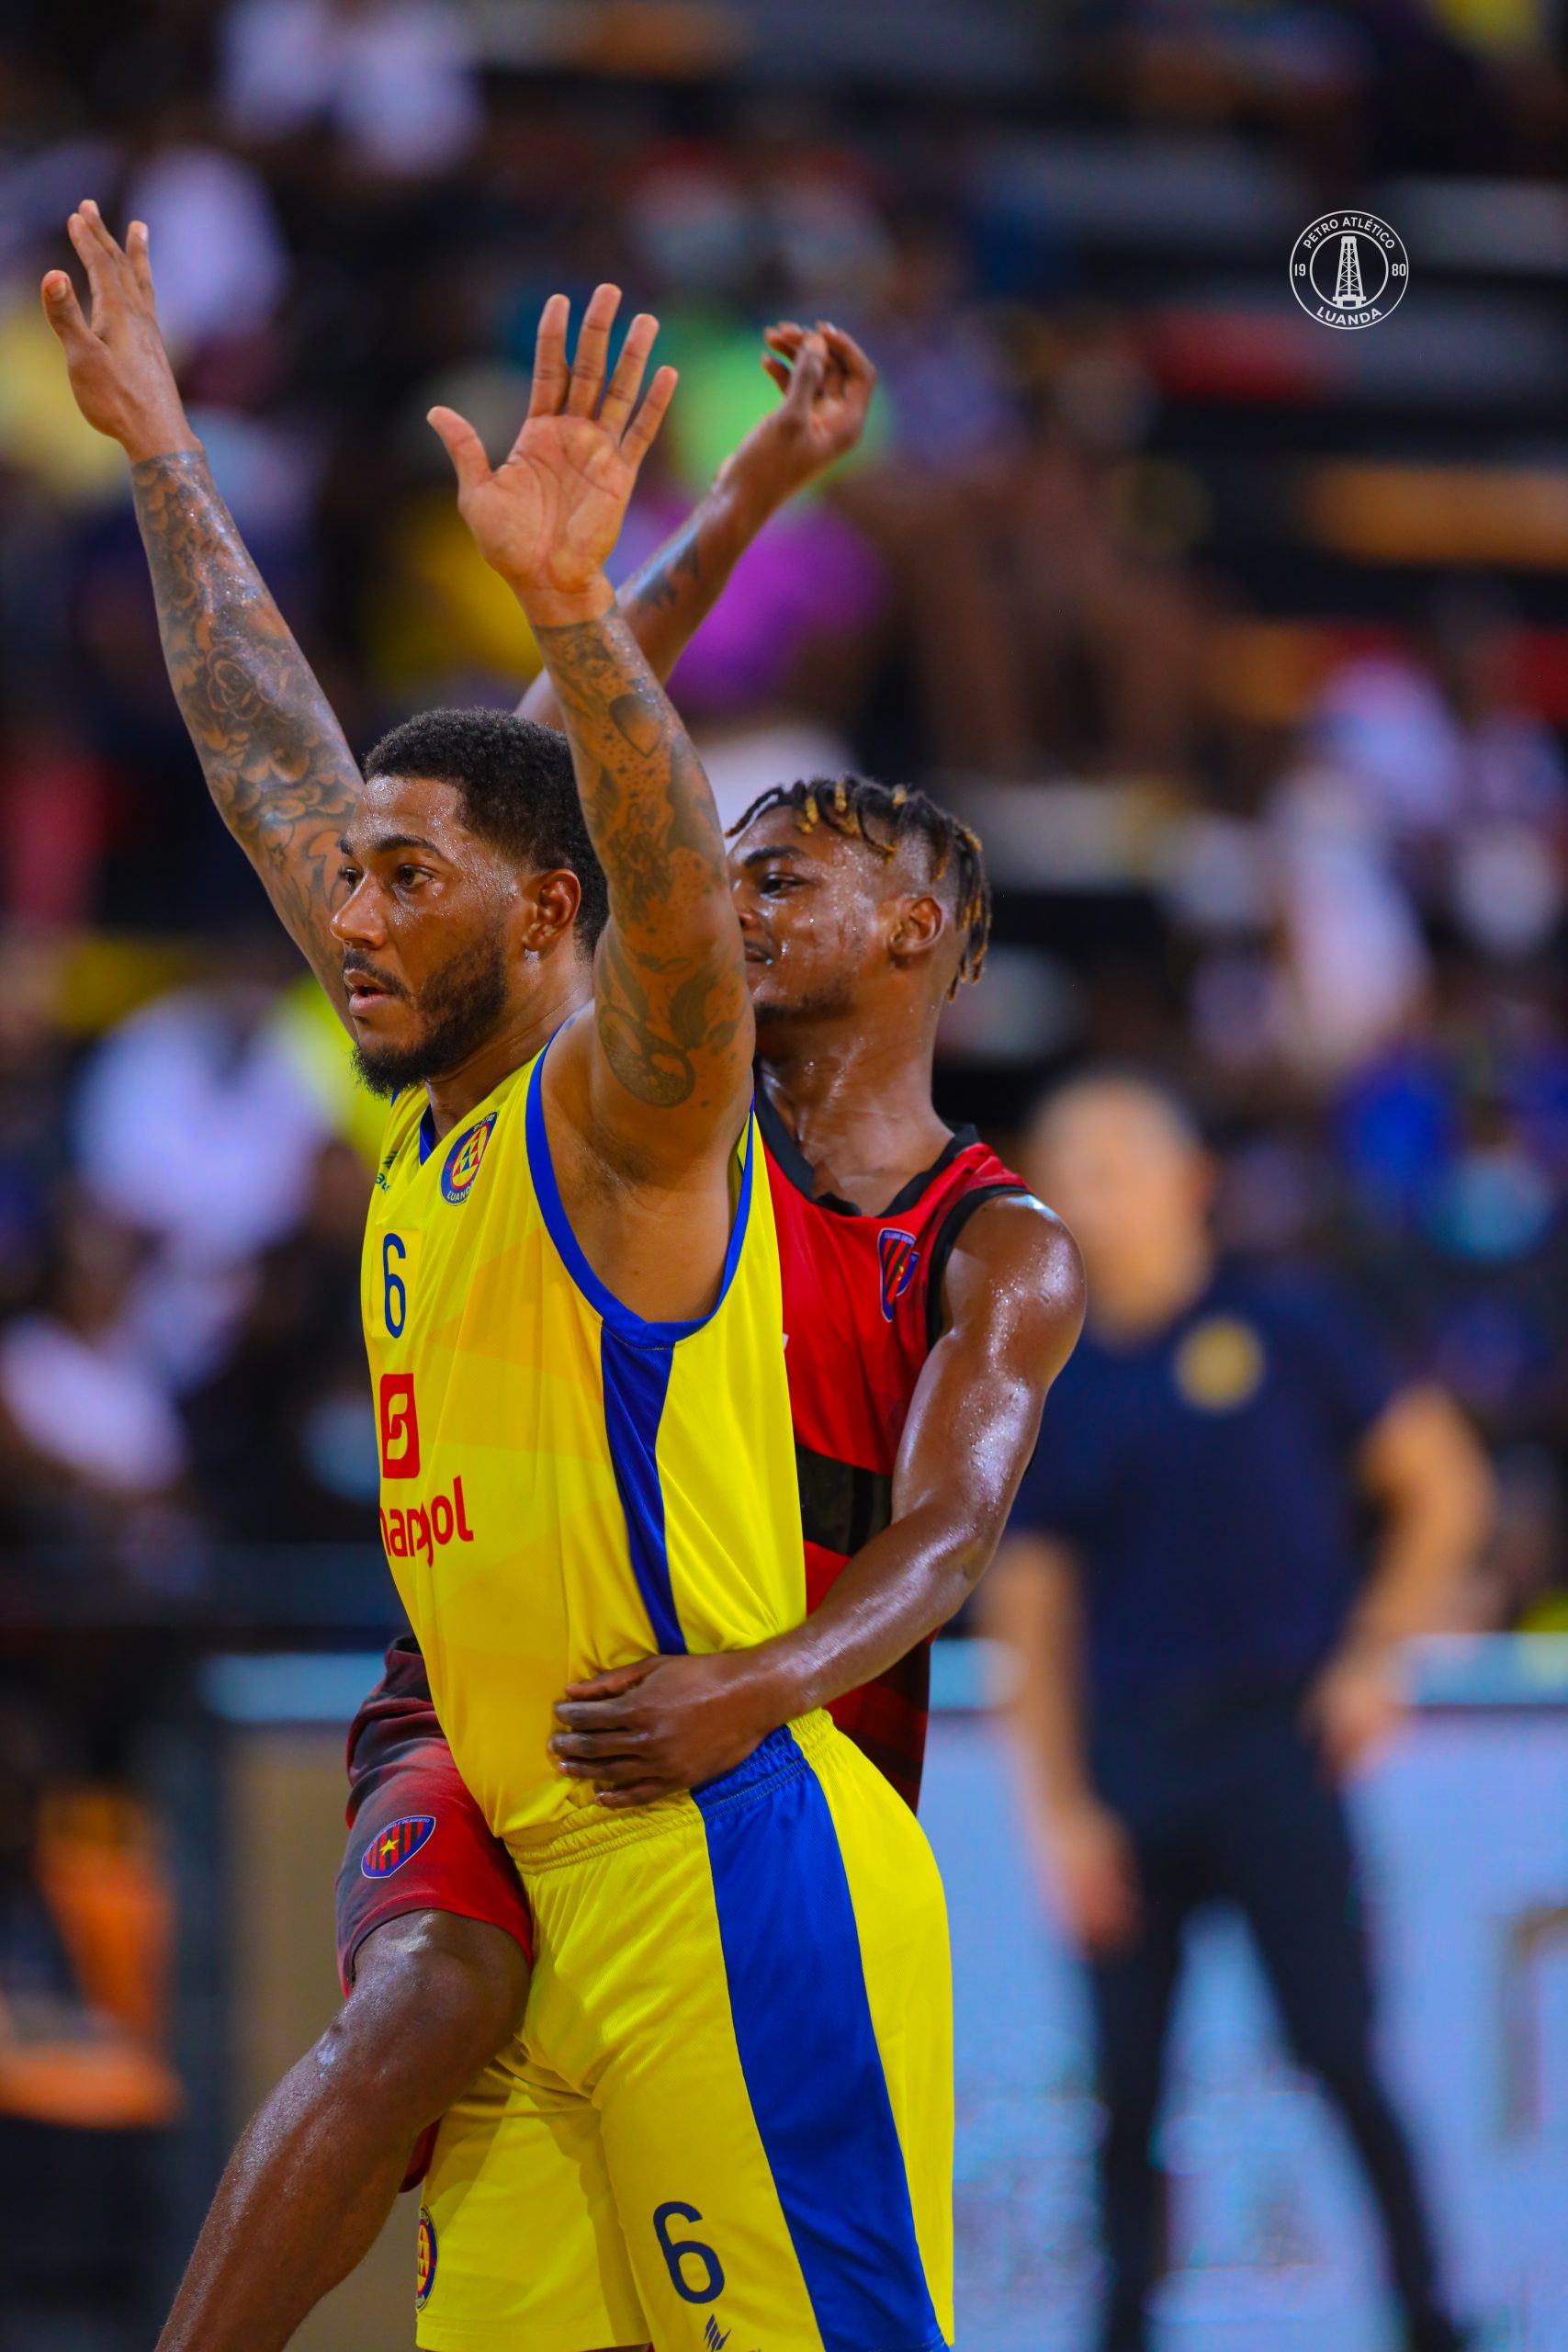 Petro de Luanda pode revalidar hoje título de campeão Nacional do Unitel  Basket - PlatinaLine